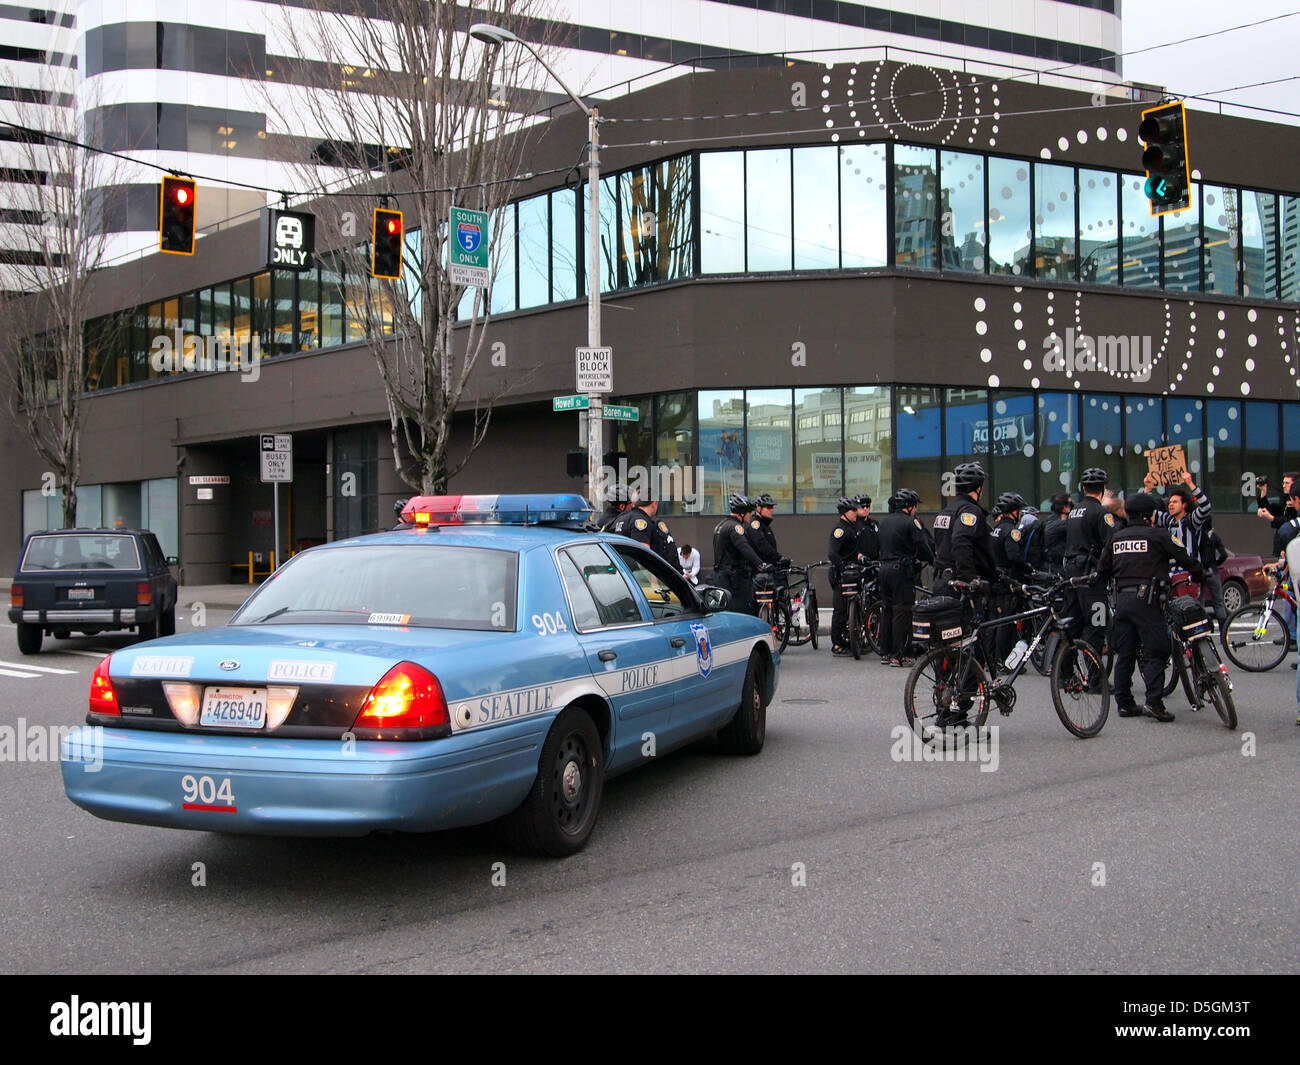 Police de Seattle à une démonstration de la police de Seattle Washington, USA Banque D'Images